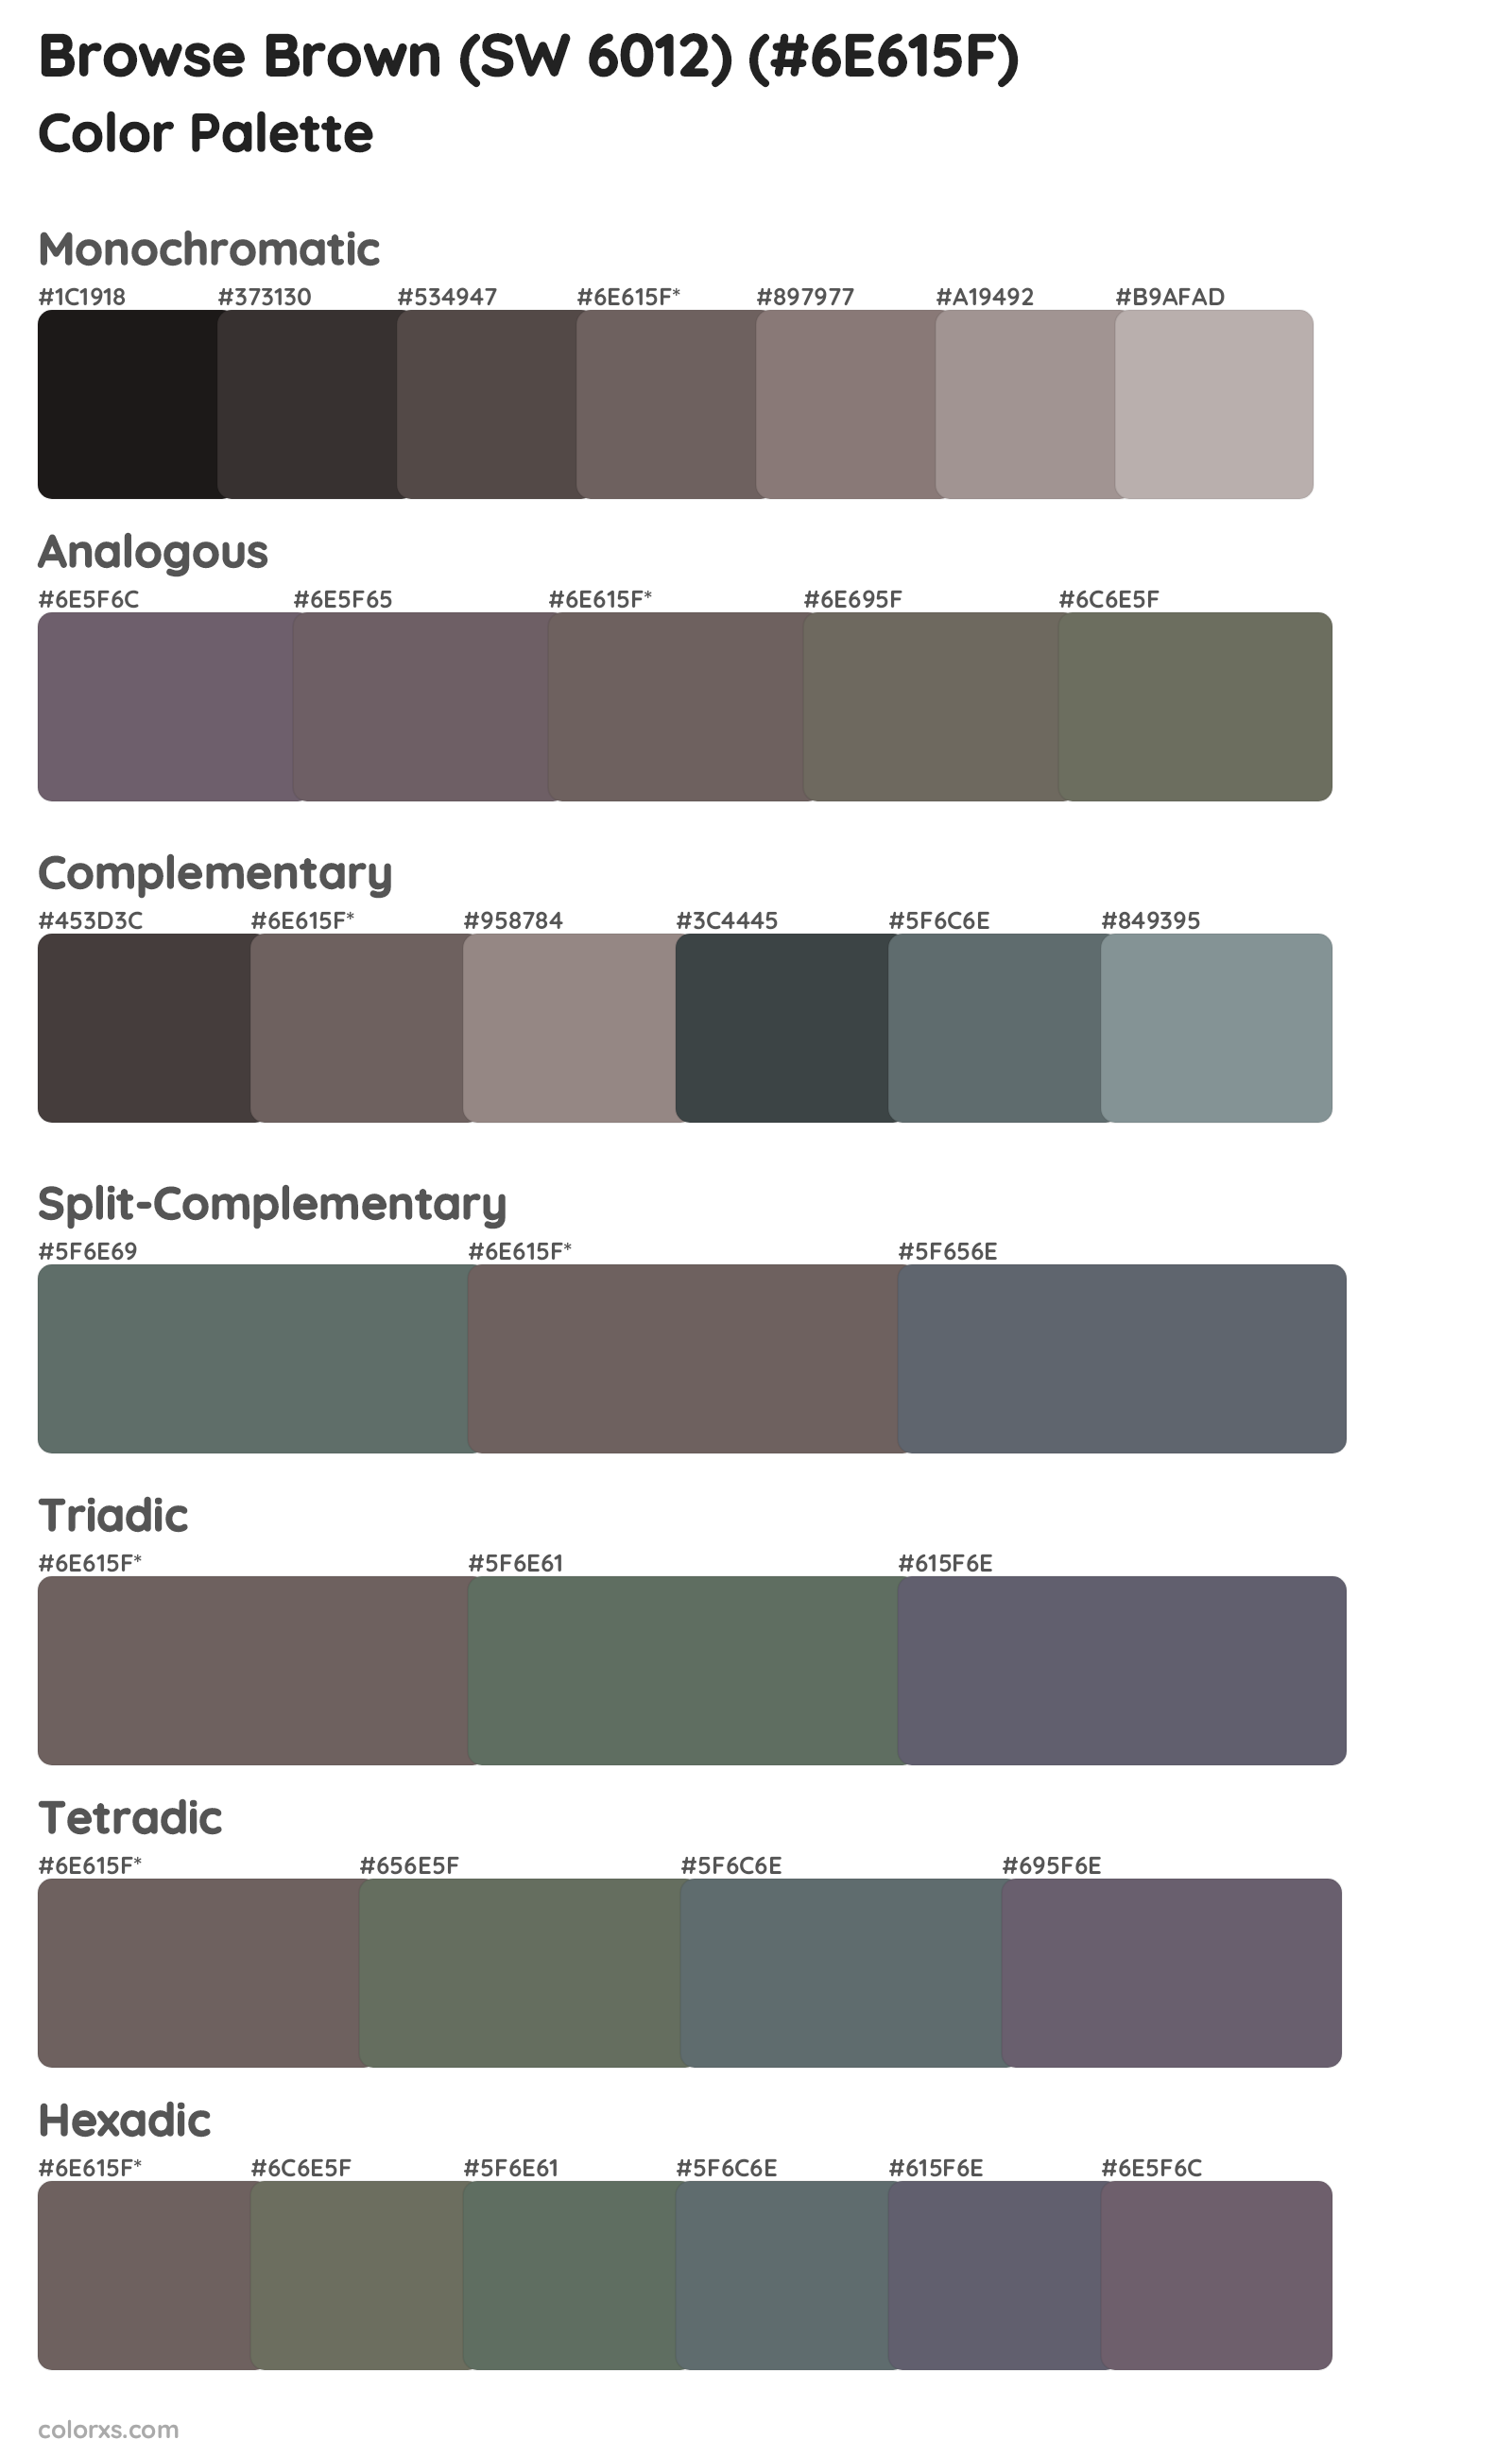 Browse Brown (SW 6012) Color Scheme Palettes